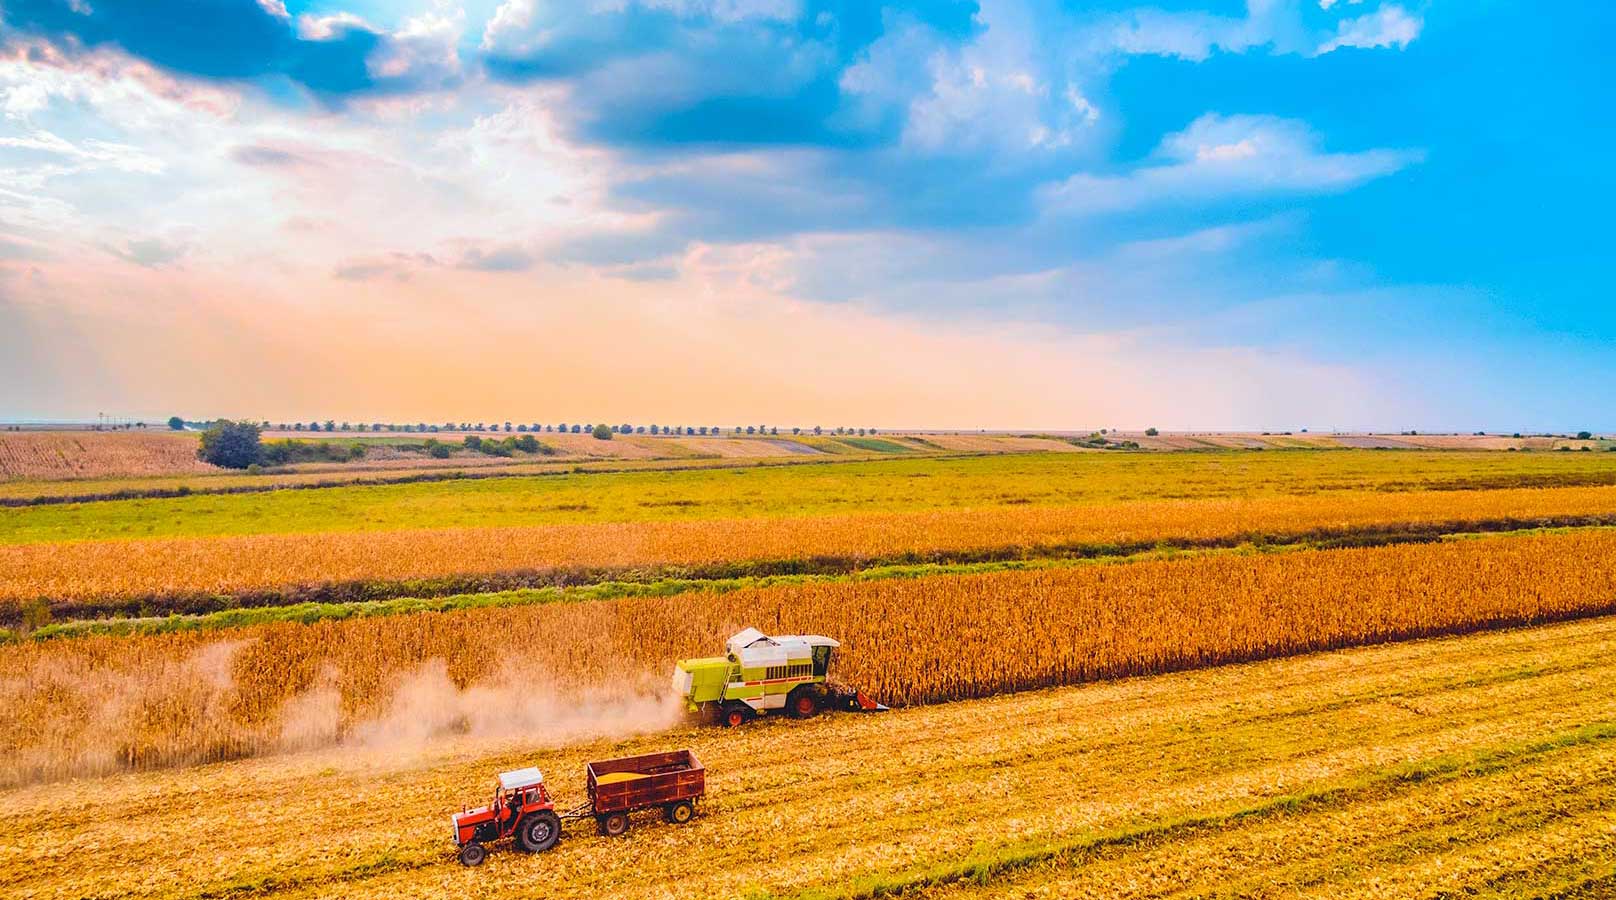 Cosechadora y tractor Fendt cosechando un campo de trigo 